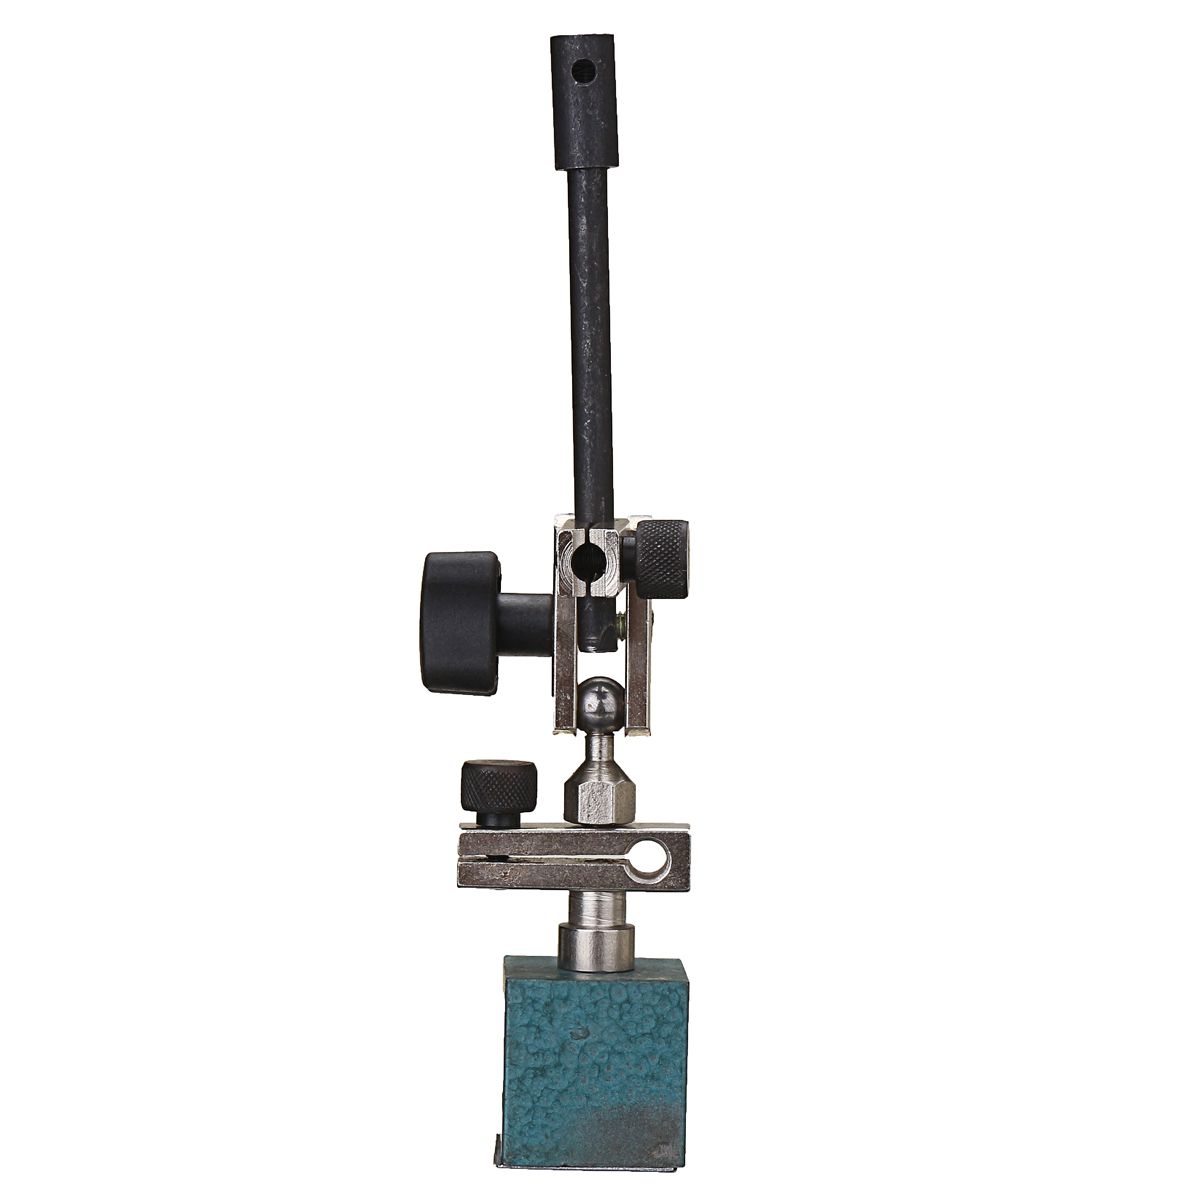 Adjustable-Magnetic-Base-Stand-Holder-For-Dial-Test-Indicator-Gauge-1261230